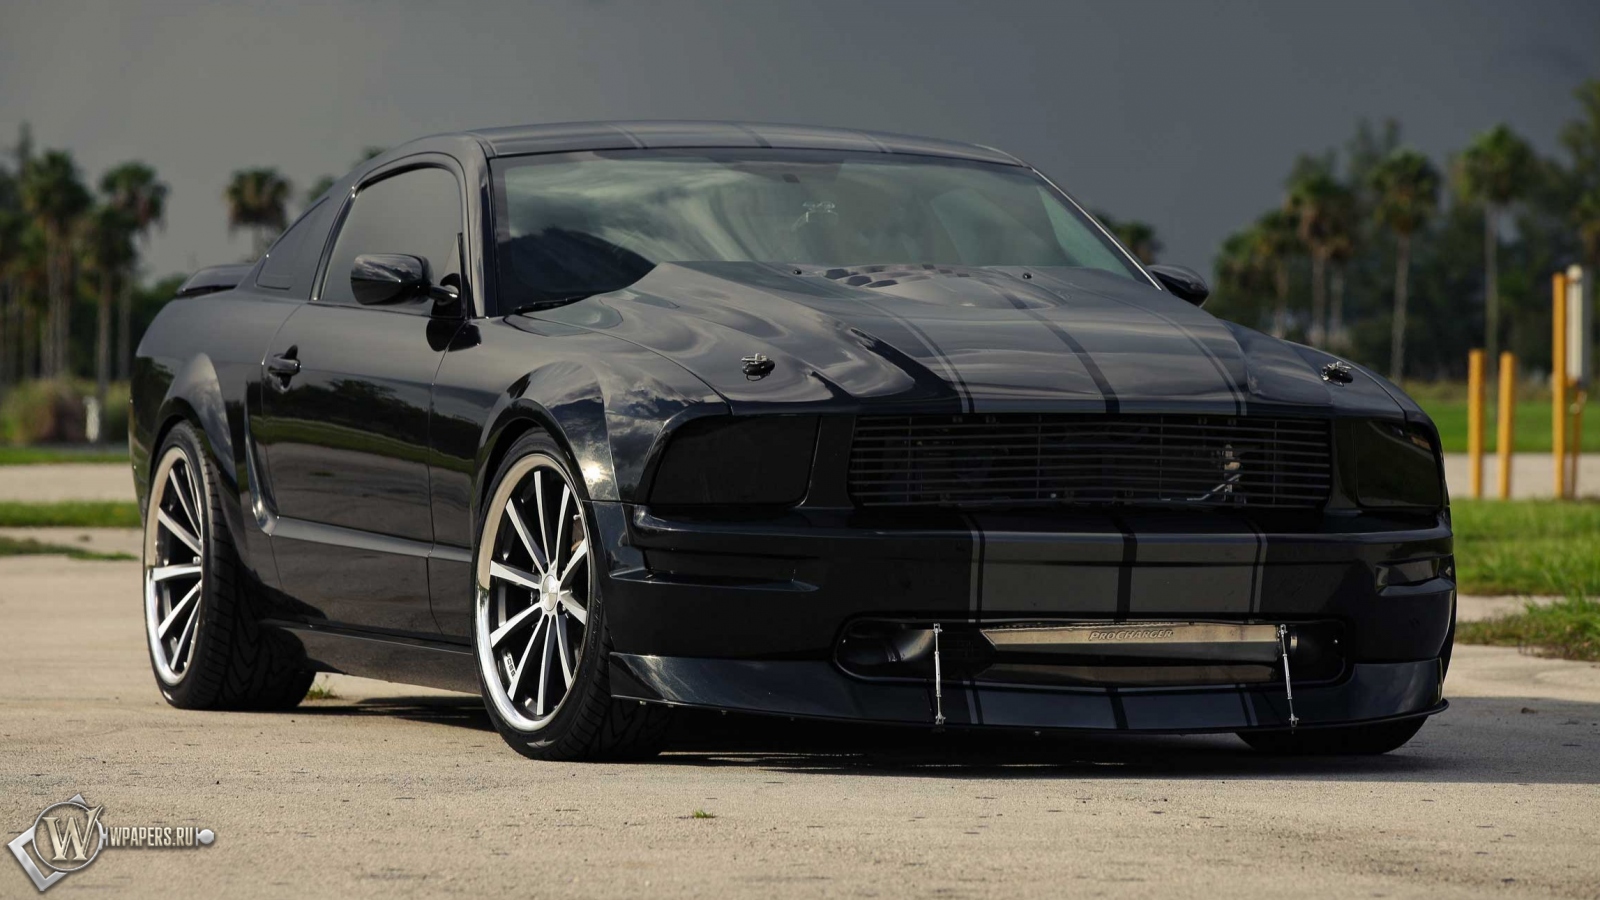 Mustang - Vossen Wheels 1600x900